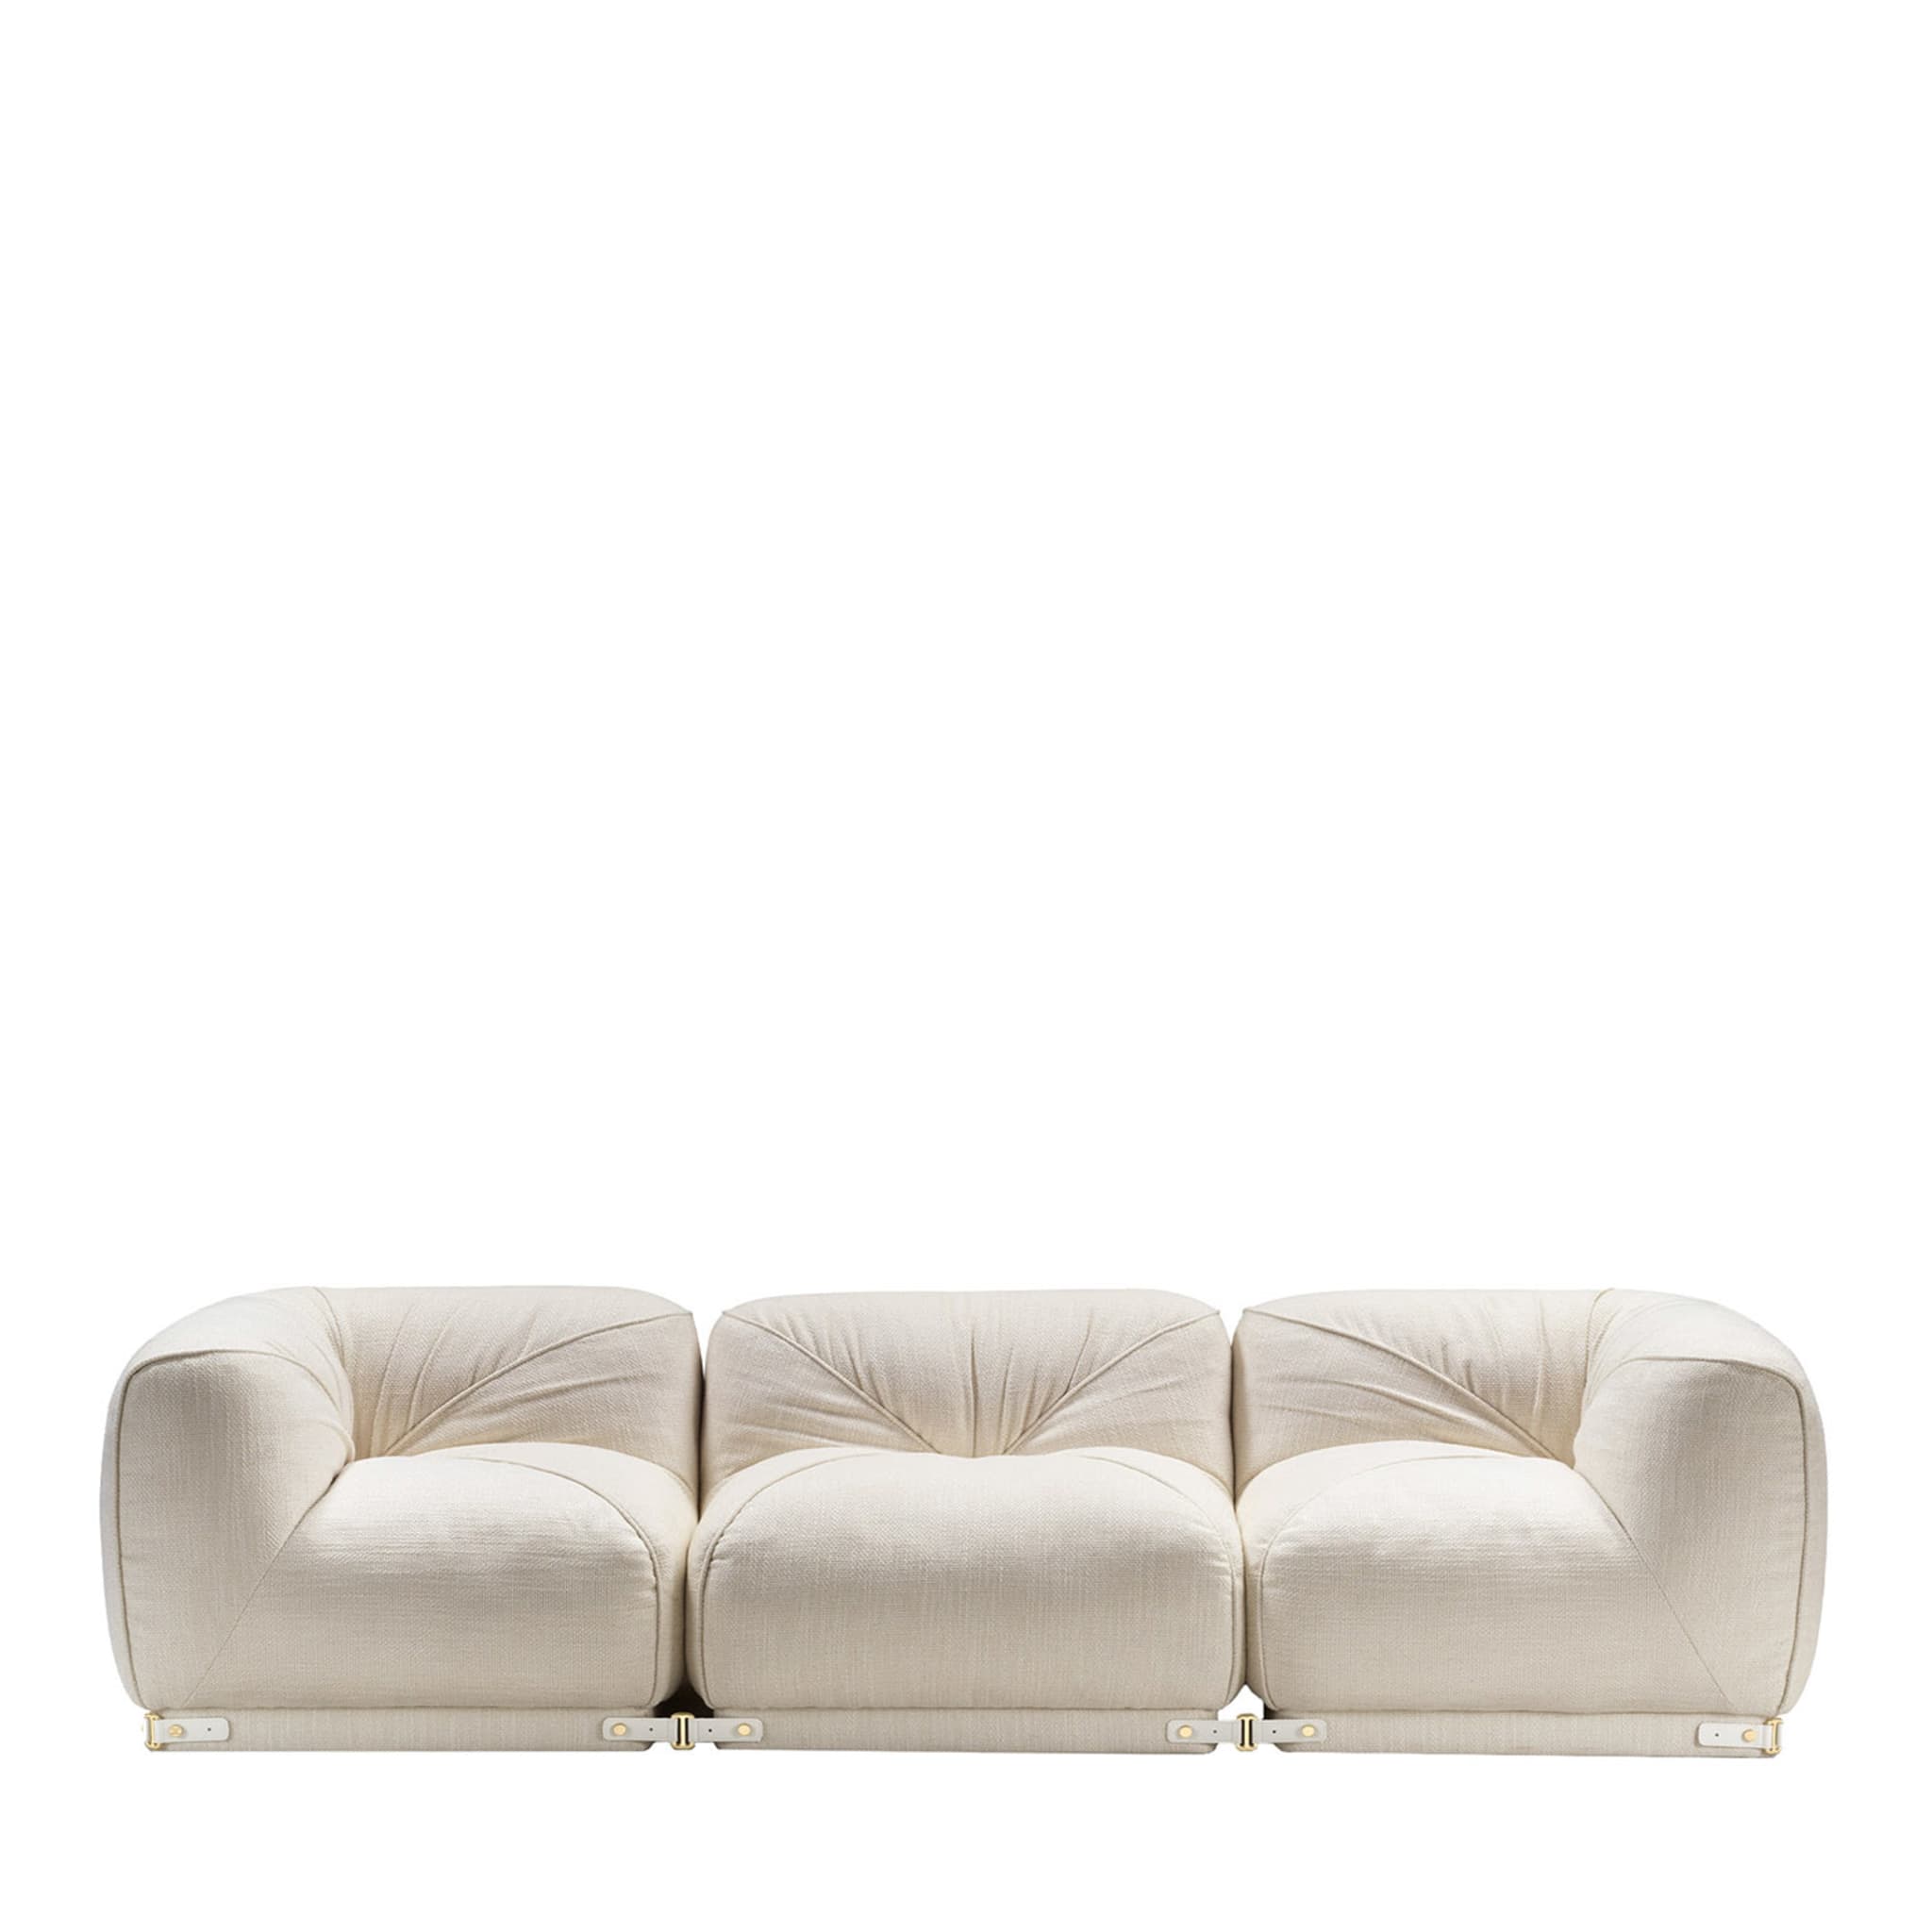 Leisure 3-Seater White Sofa by Lorenza Bozzoli - Main view